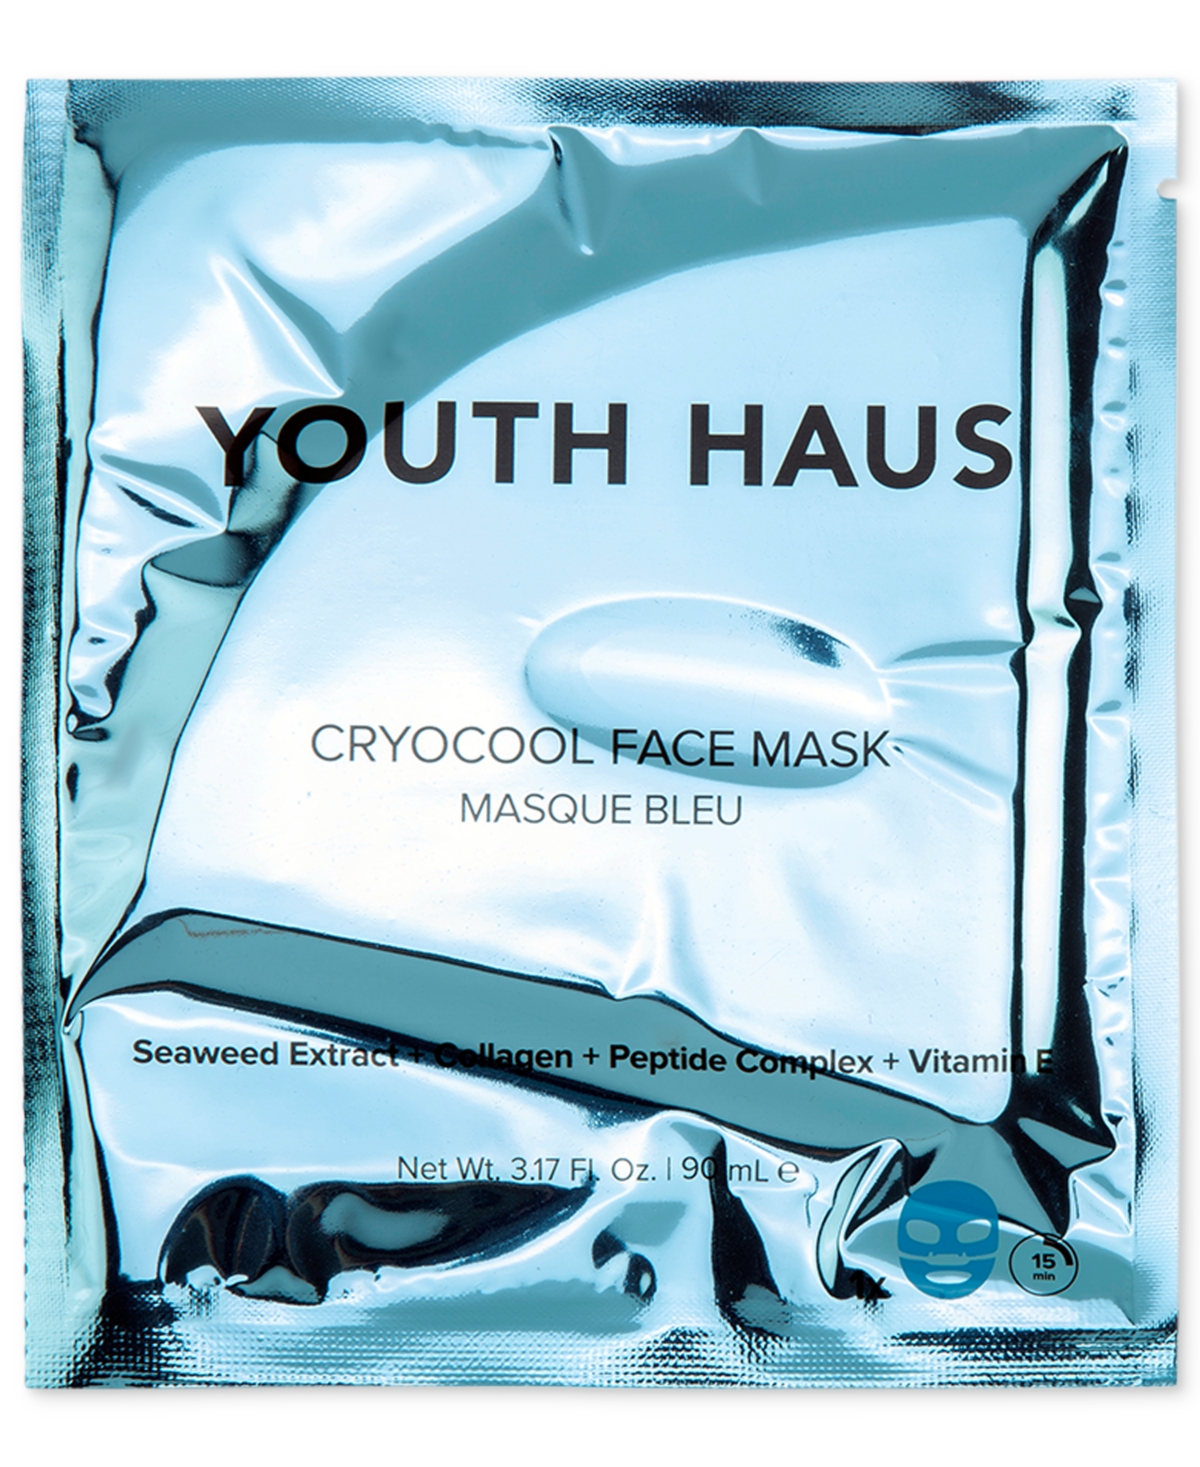 Youth Haus CryoCool Face Mask, Single